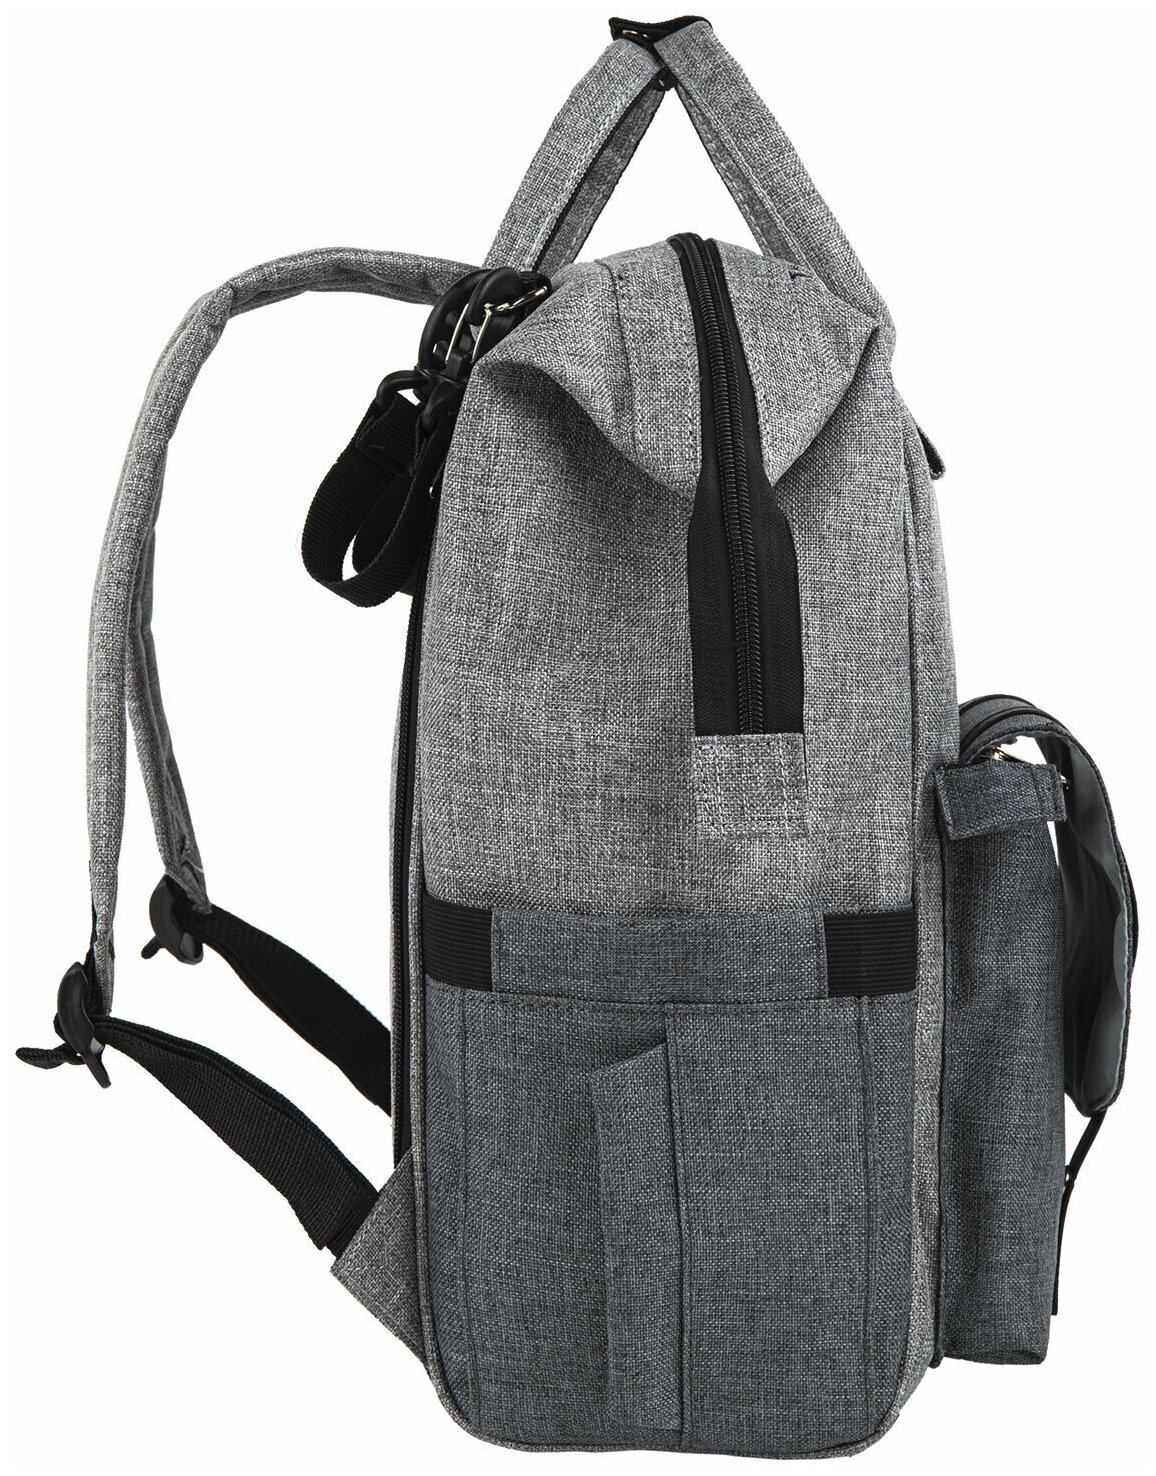 Рюкзак / сумка женский для мамы и малыша / для коляски / беременных / школьный Brauberg Mommy, крепления для коляски, термокарманы, серый, 41x24x17см